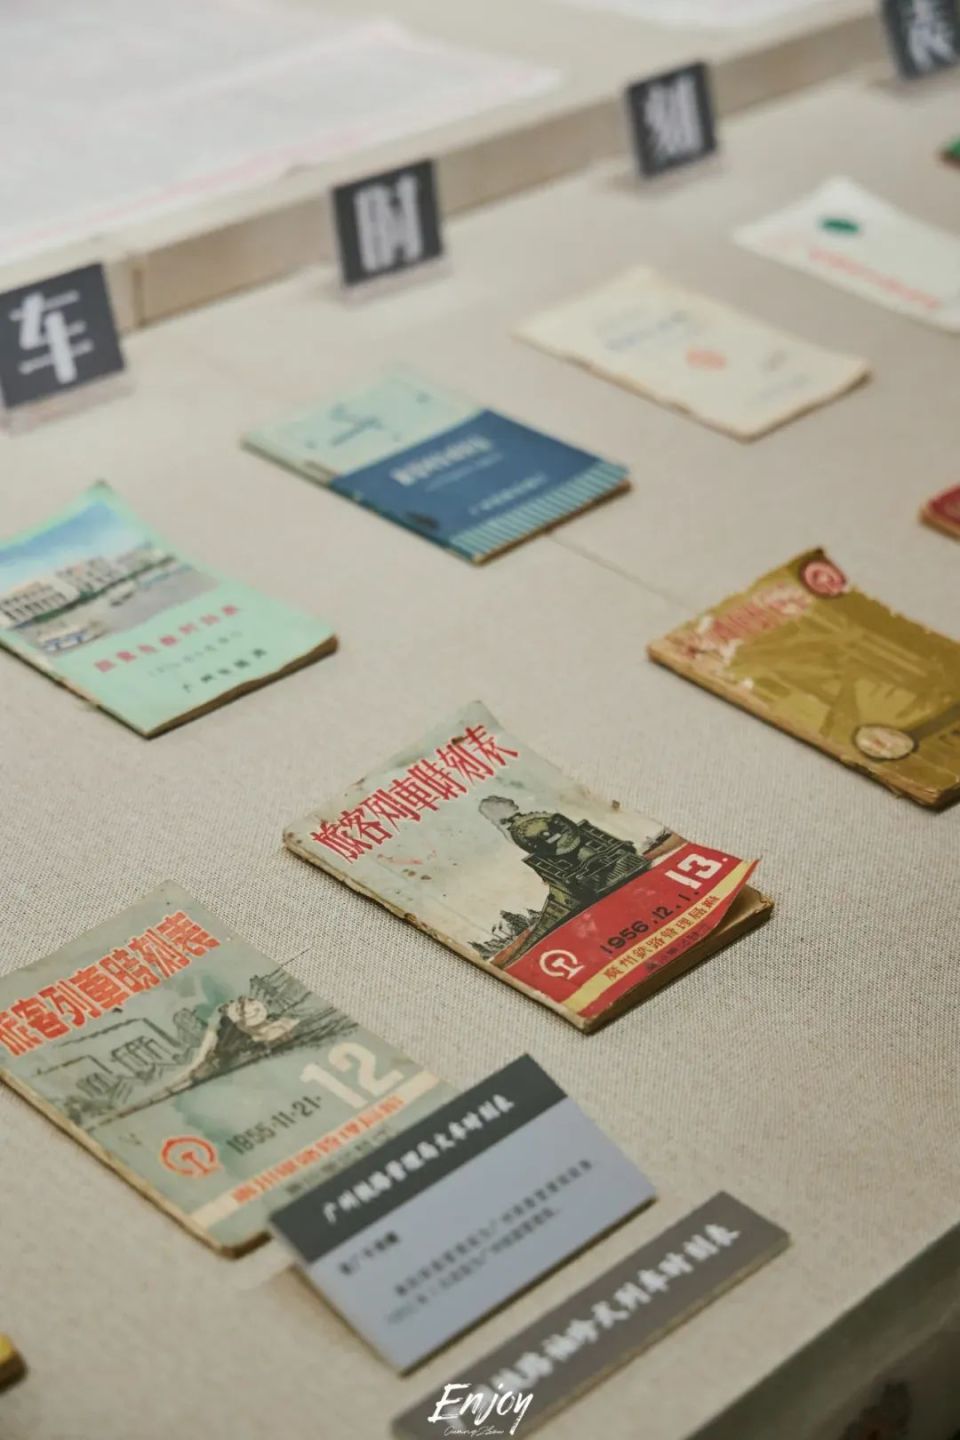 广州邮政博物馆藏品类图片